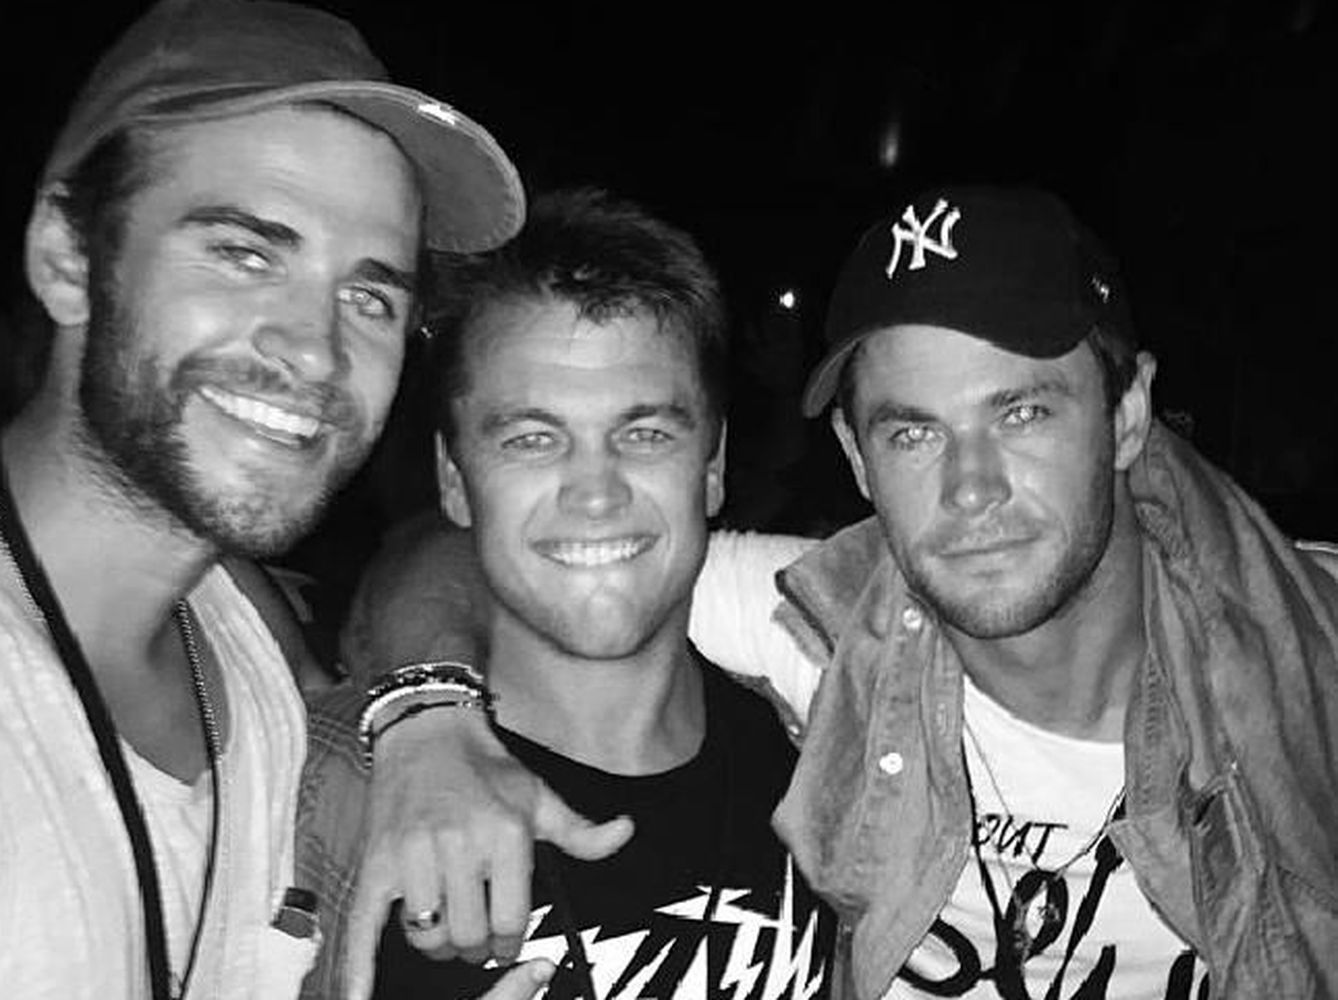 Los hermanos Hemsworth durante el festival. (Instagram)